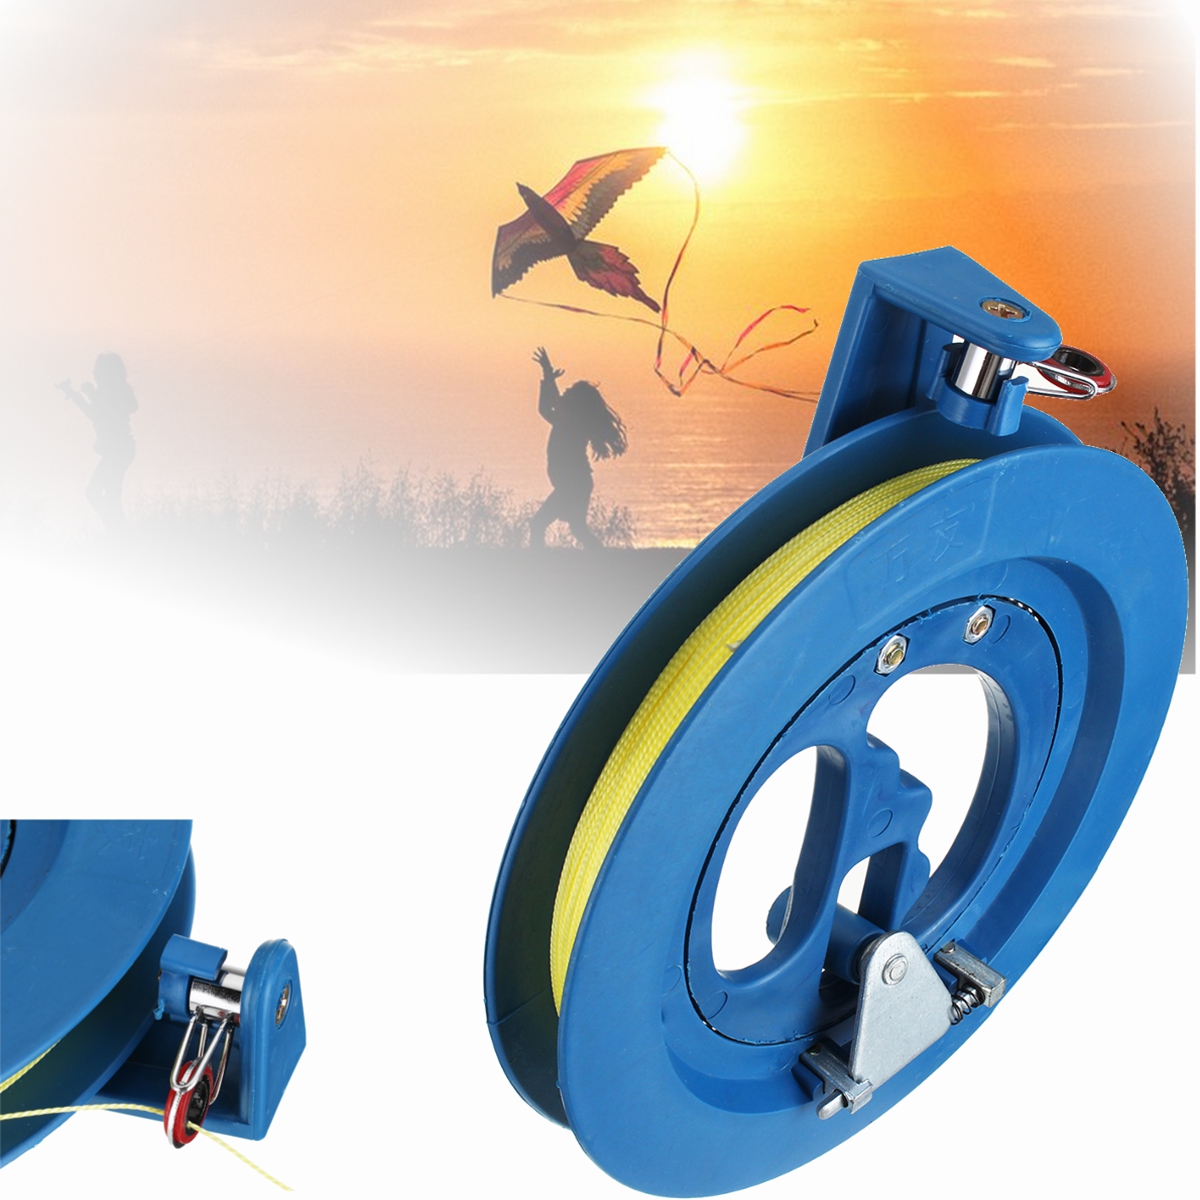 Blue-Kite-Line-Winder-Winding-Reel-100M-String-Grip-Wheel-Flying-Tools-amp-Lock-1365842